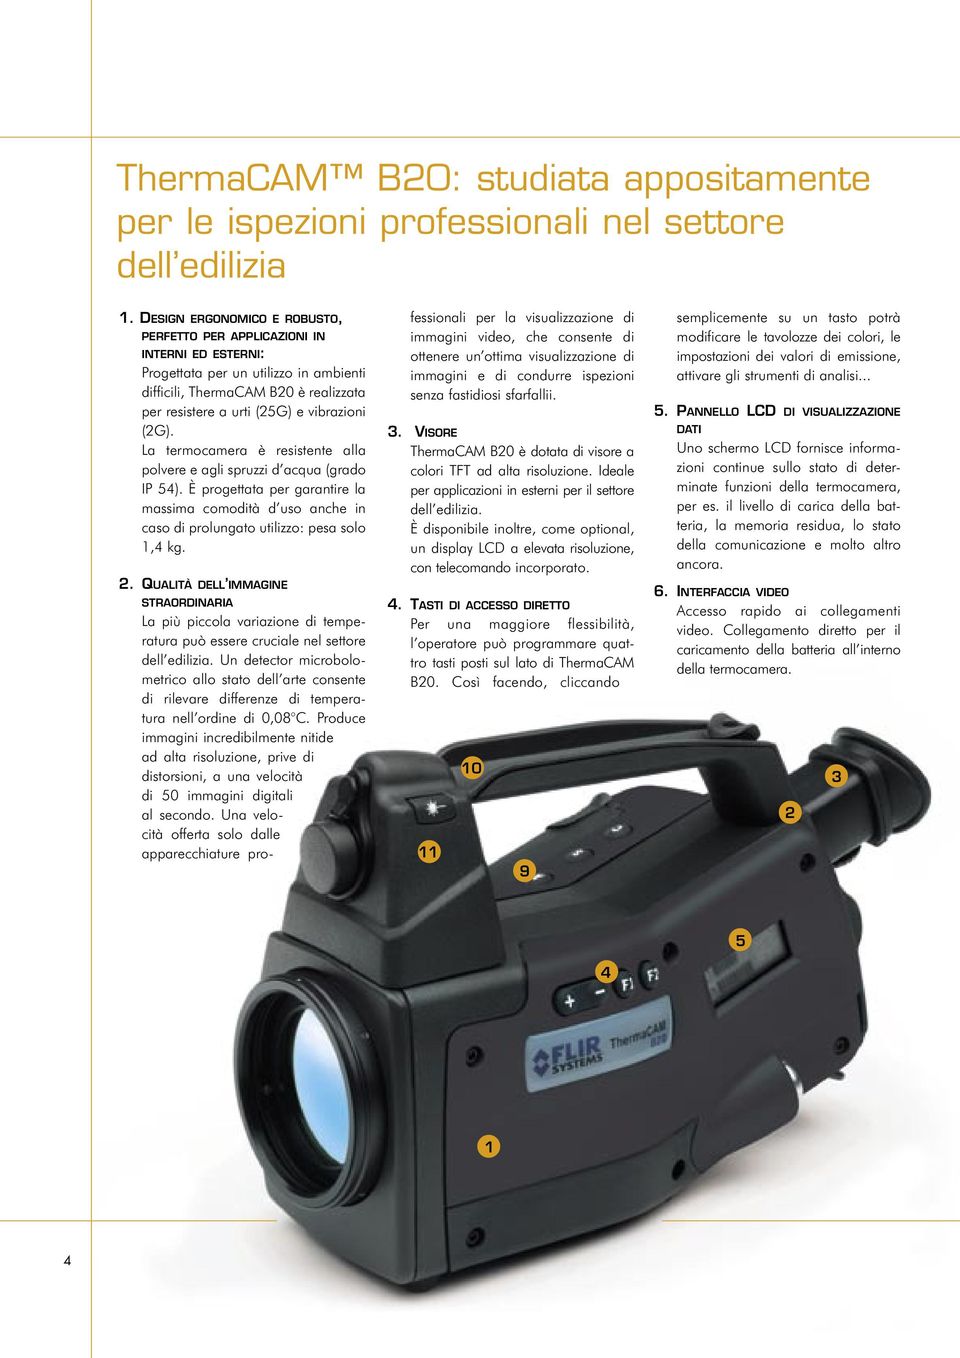 La termocamera è resistente alla polvere e agli spruzzi d acqua (grado IP 54). È progettata per garantire la massima comodità d uso anche in caso di prolungato utilizzo: pesa solo 1,4 kg. 2.